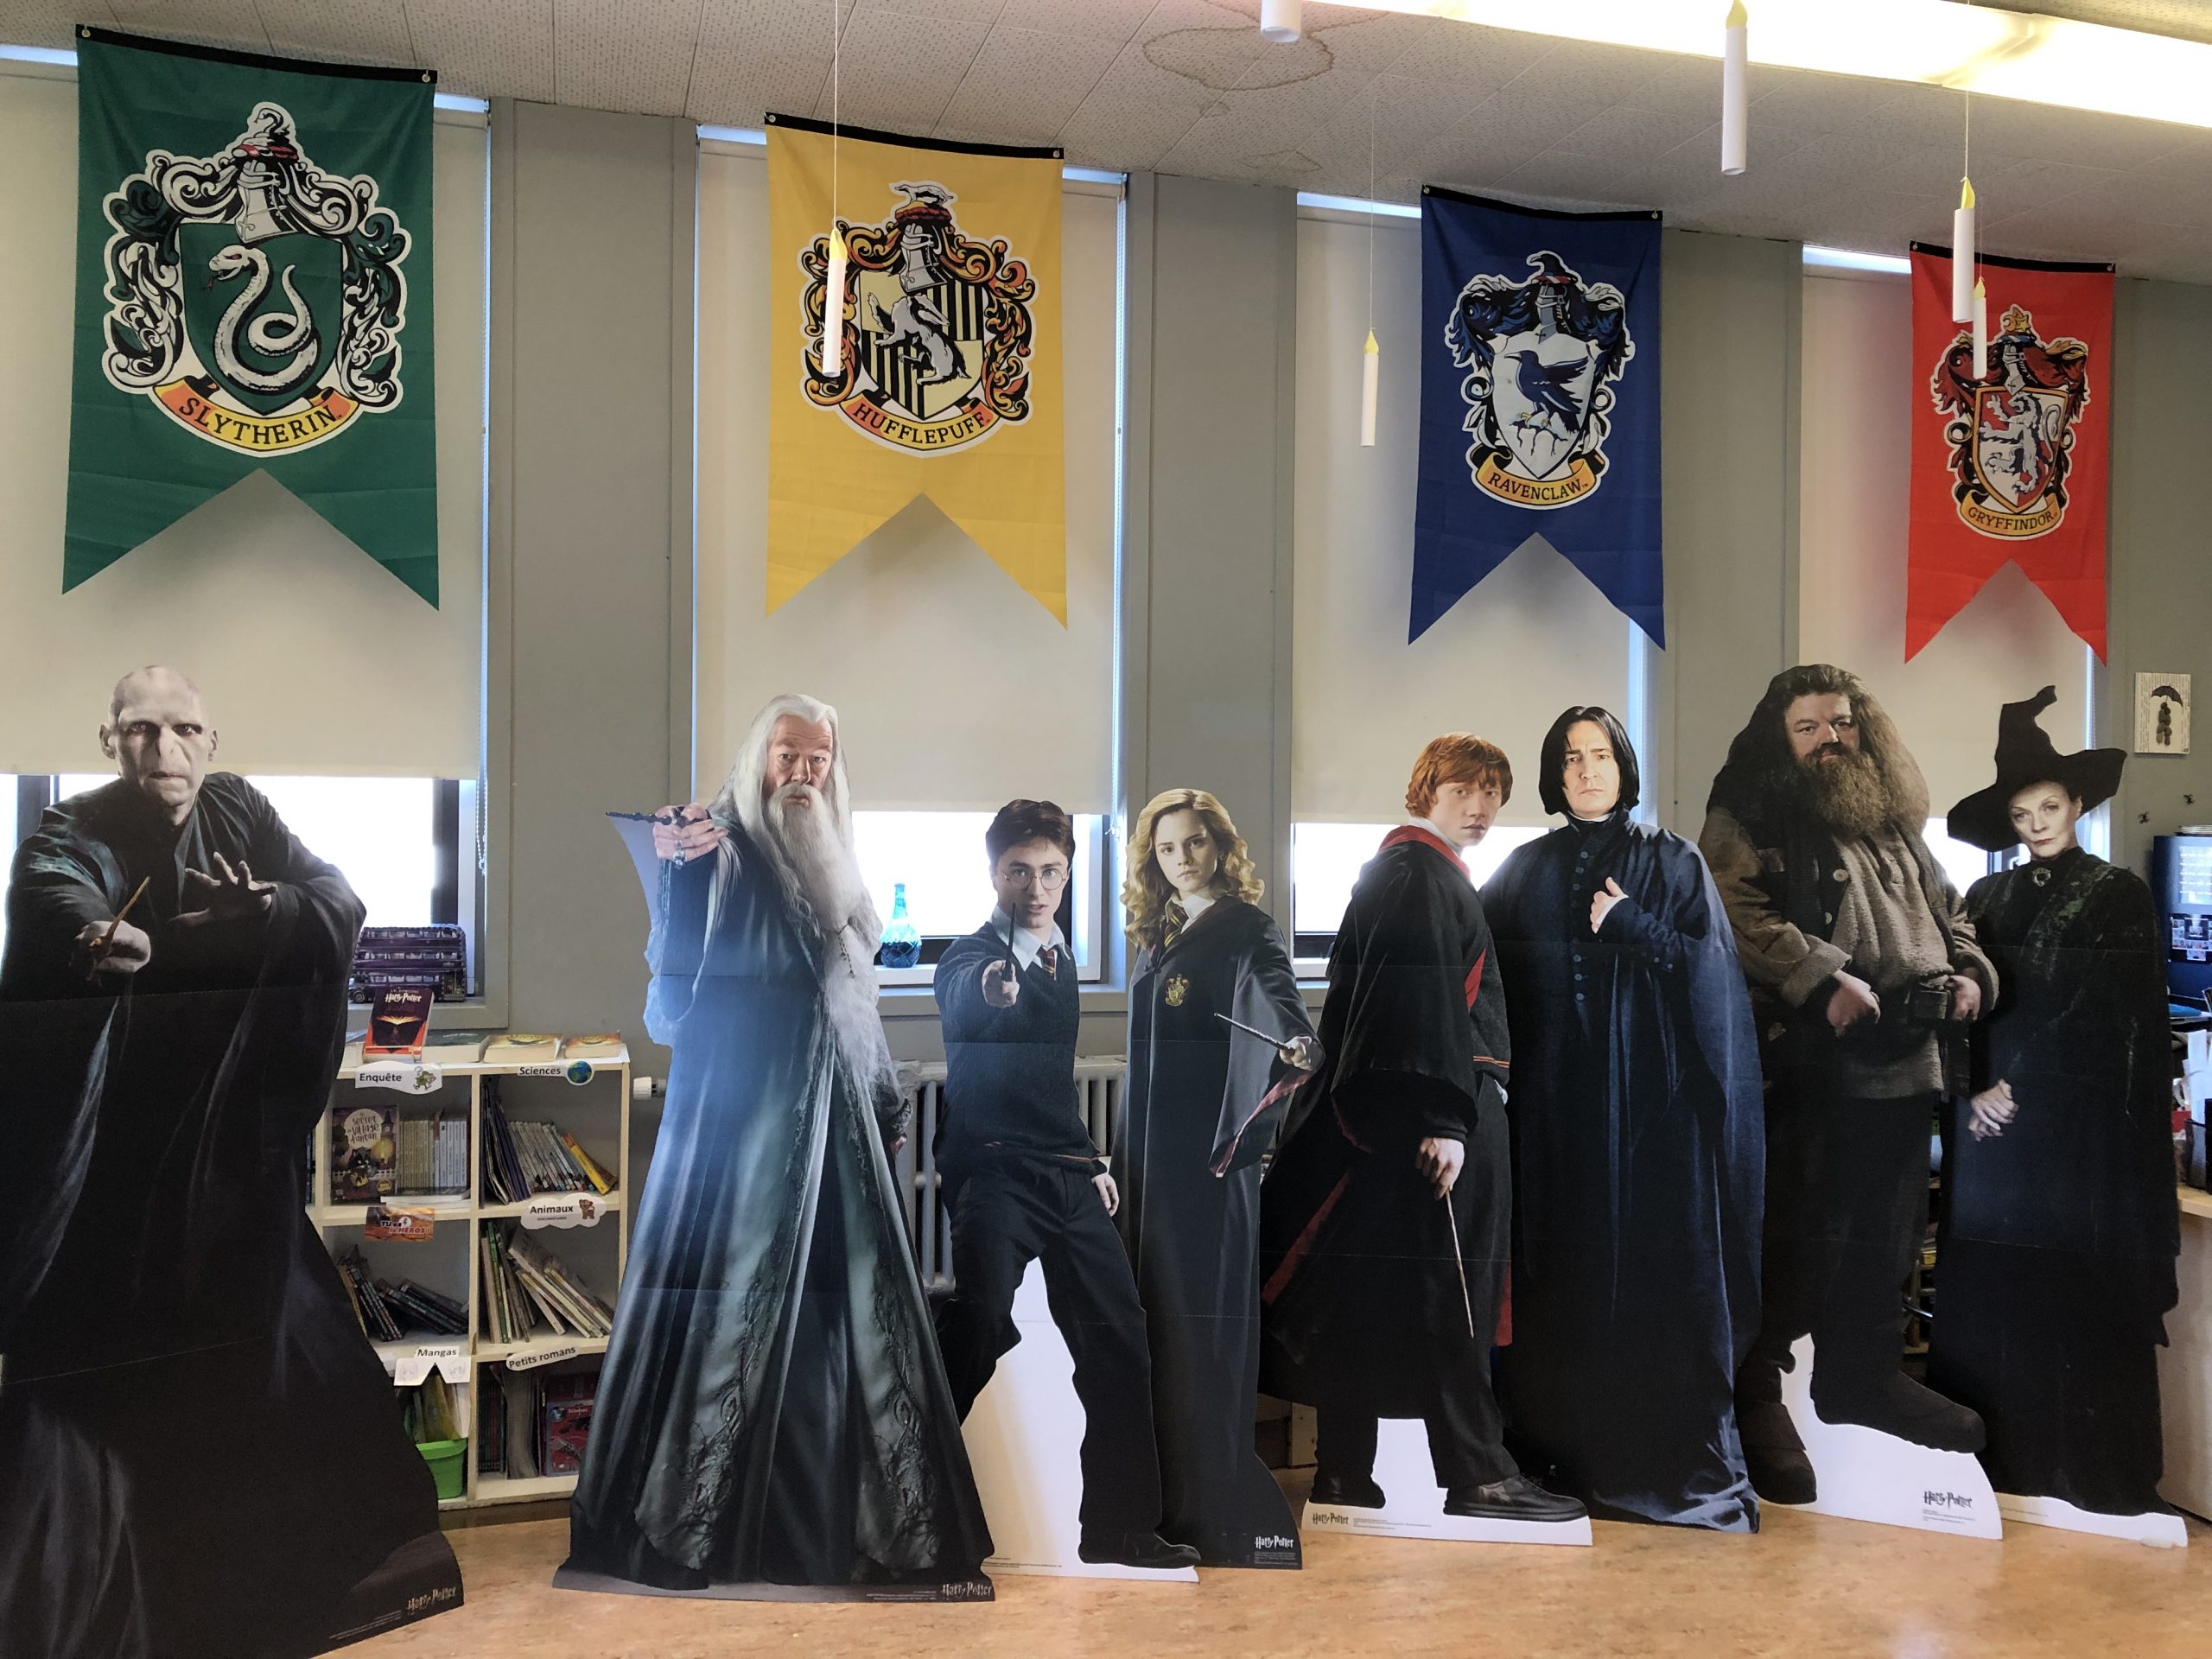 Tournage de cinq mini-films inspirés d'Harry Potter à l'école Saint-Romuald  - L'Avenir et des Rivières